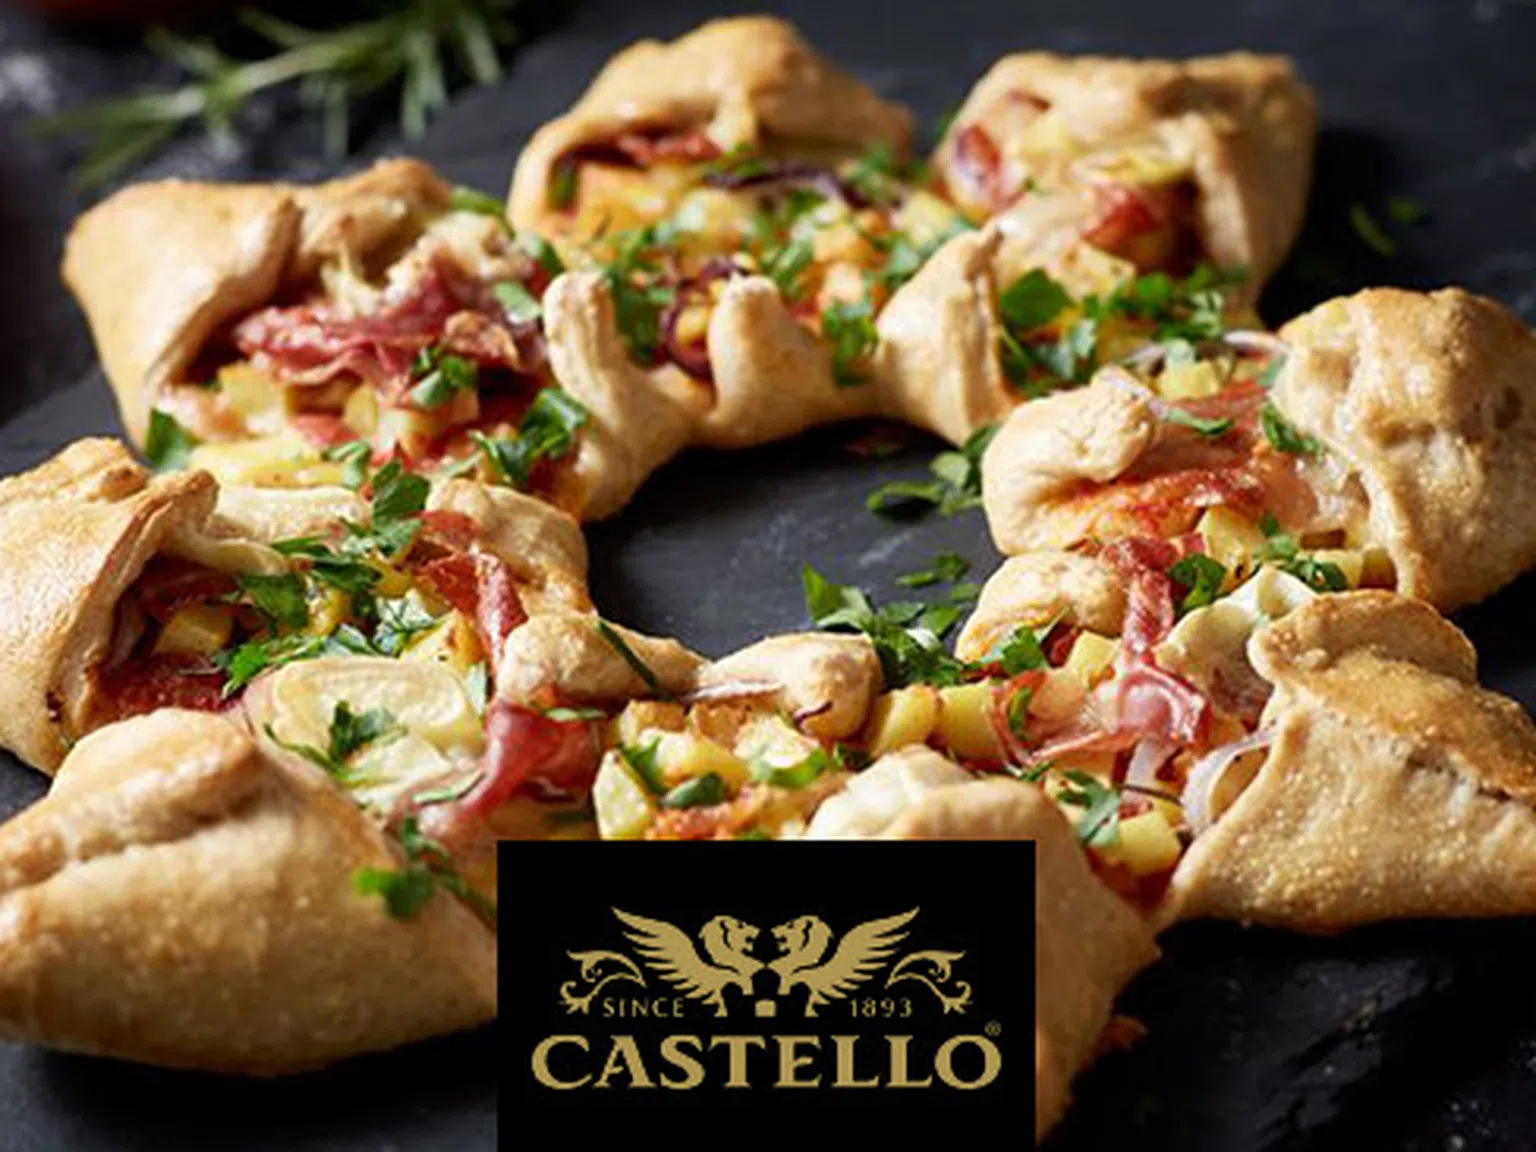 Звездна пица с Castello Brie, картофи, червен лук, прошуто и розмарин